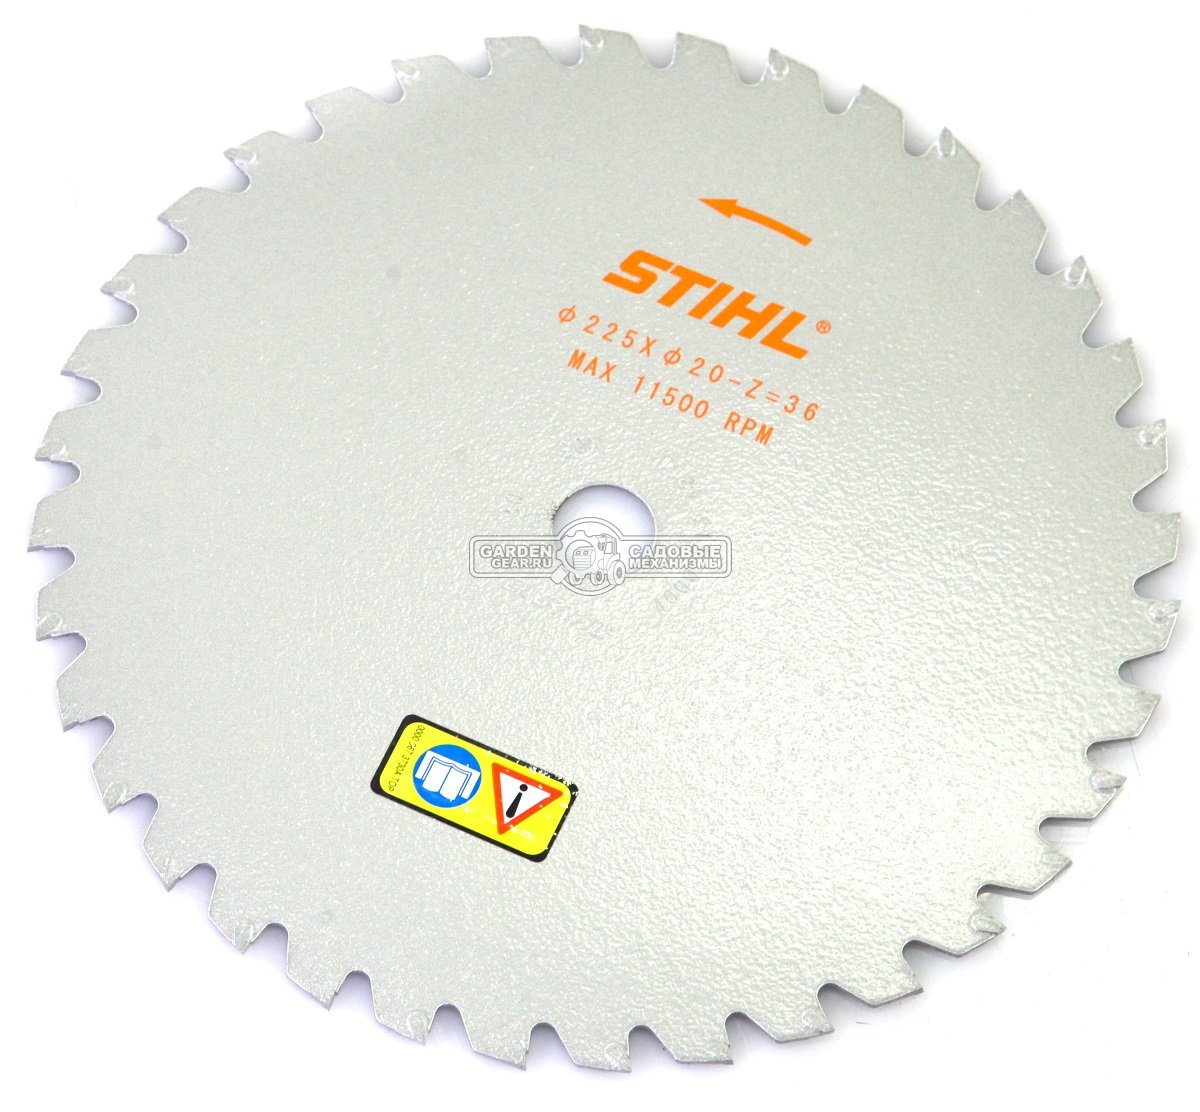 Пильный диск Stihl Woodcut KSB 36Z 225 мм., твердосплавный, для FS 350 - 561 для пиления (посадочный диаметр 20 мм.)